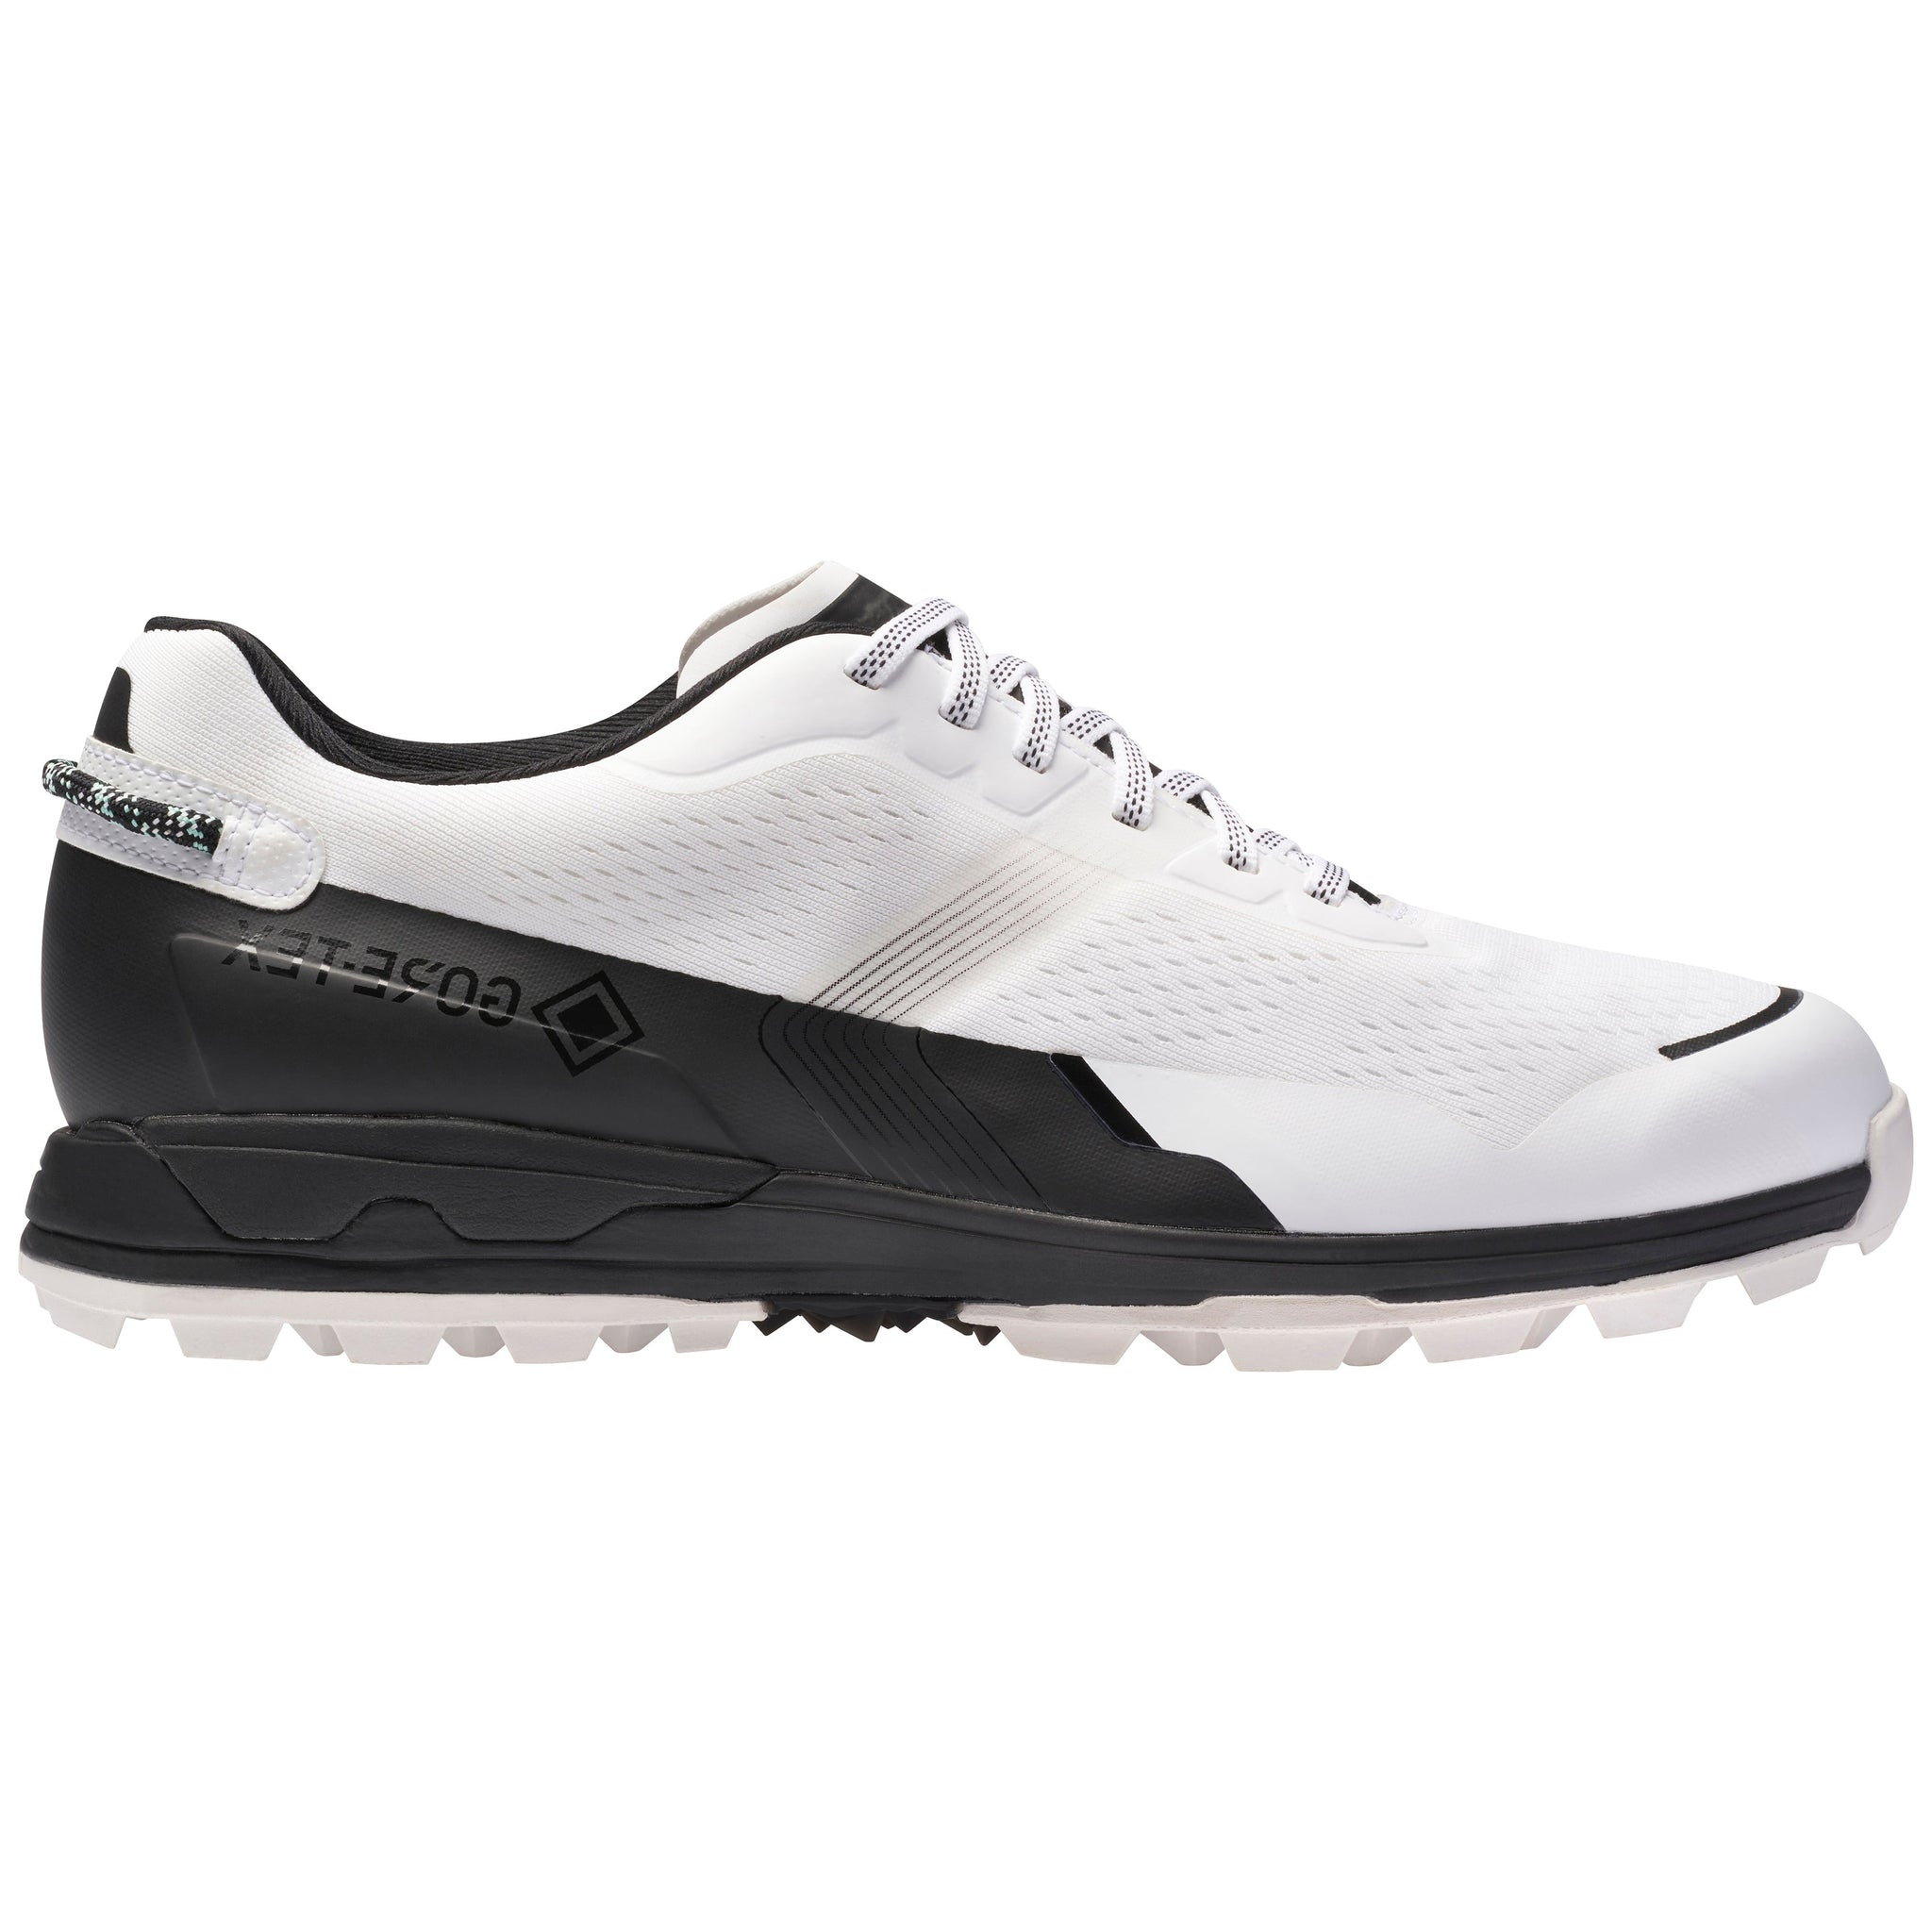 mizuno-mzu-en-golf-shoes-51gm2290-white-black-91